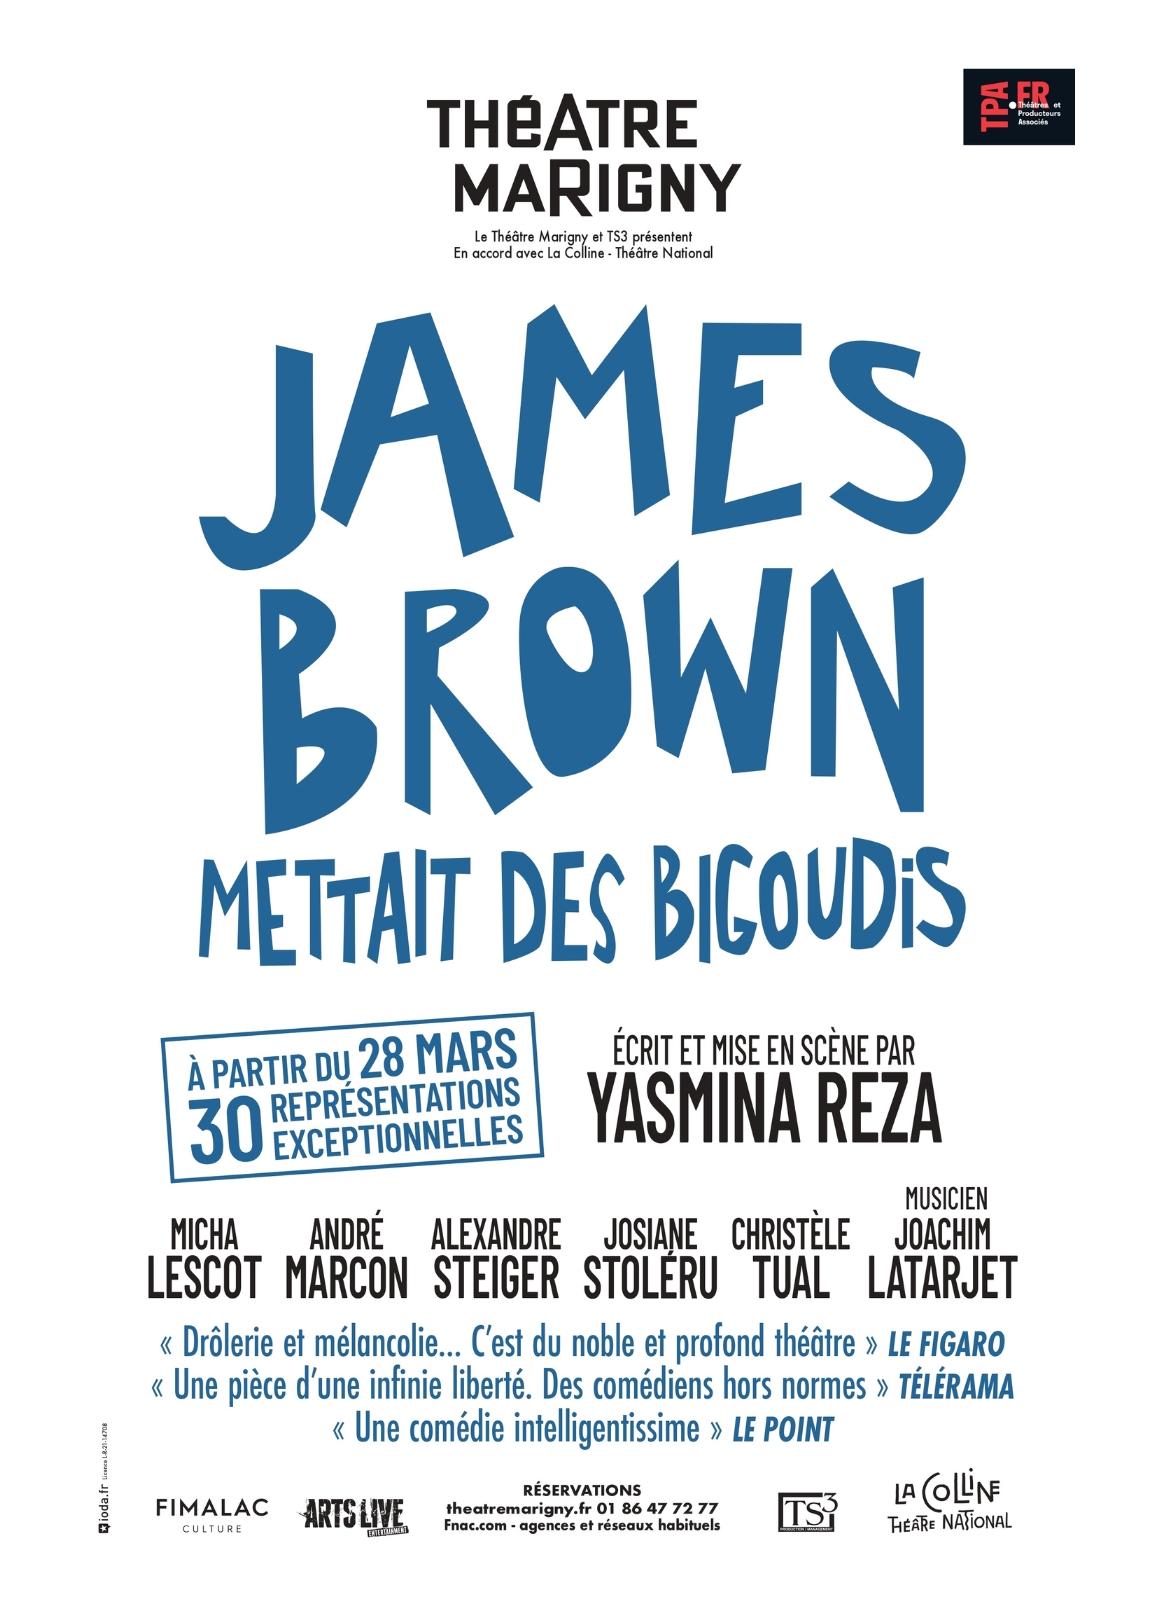 JAMES BROWN METTAIT DES BIGOUDIS